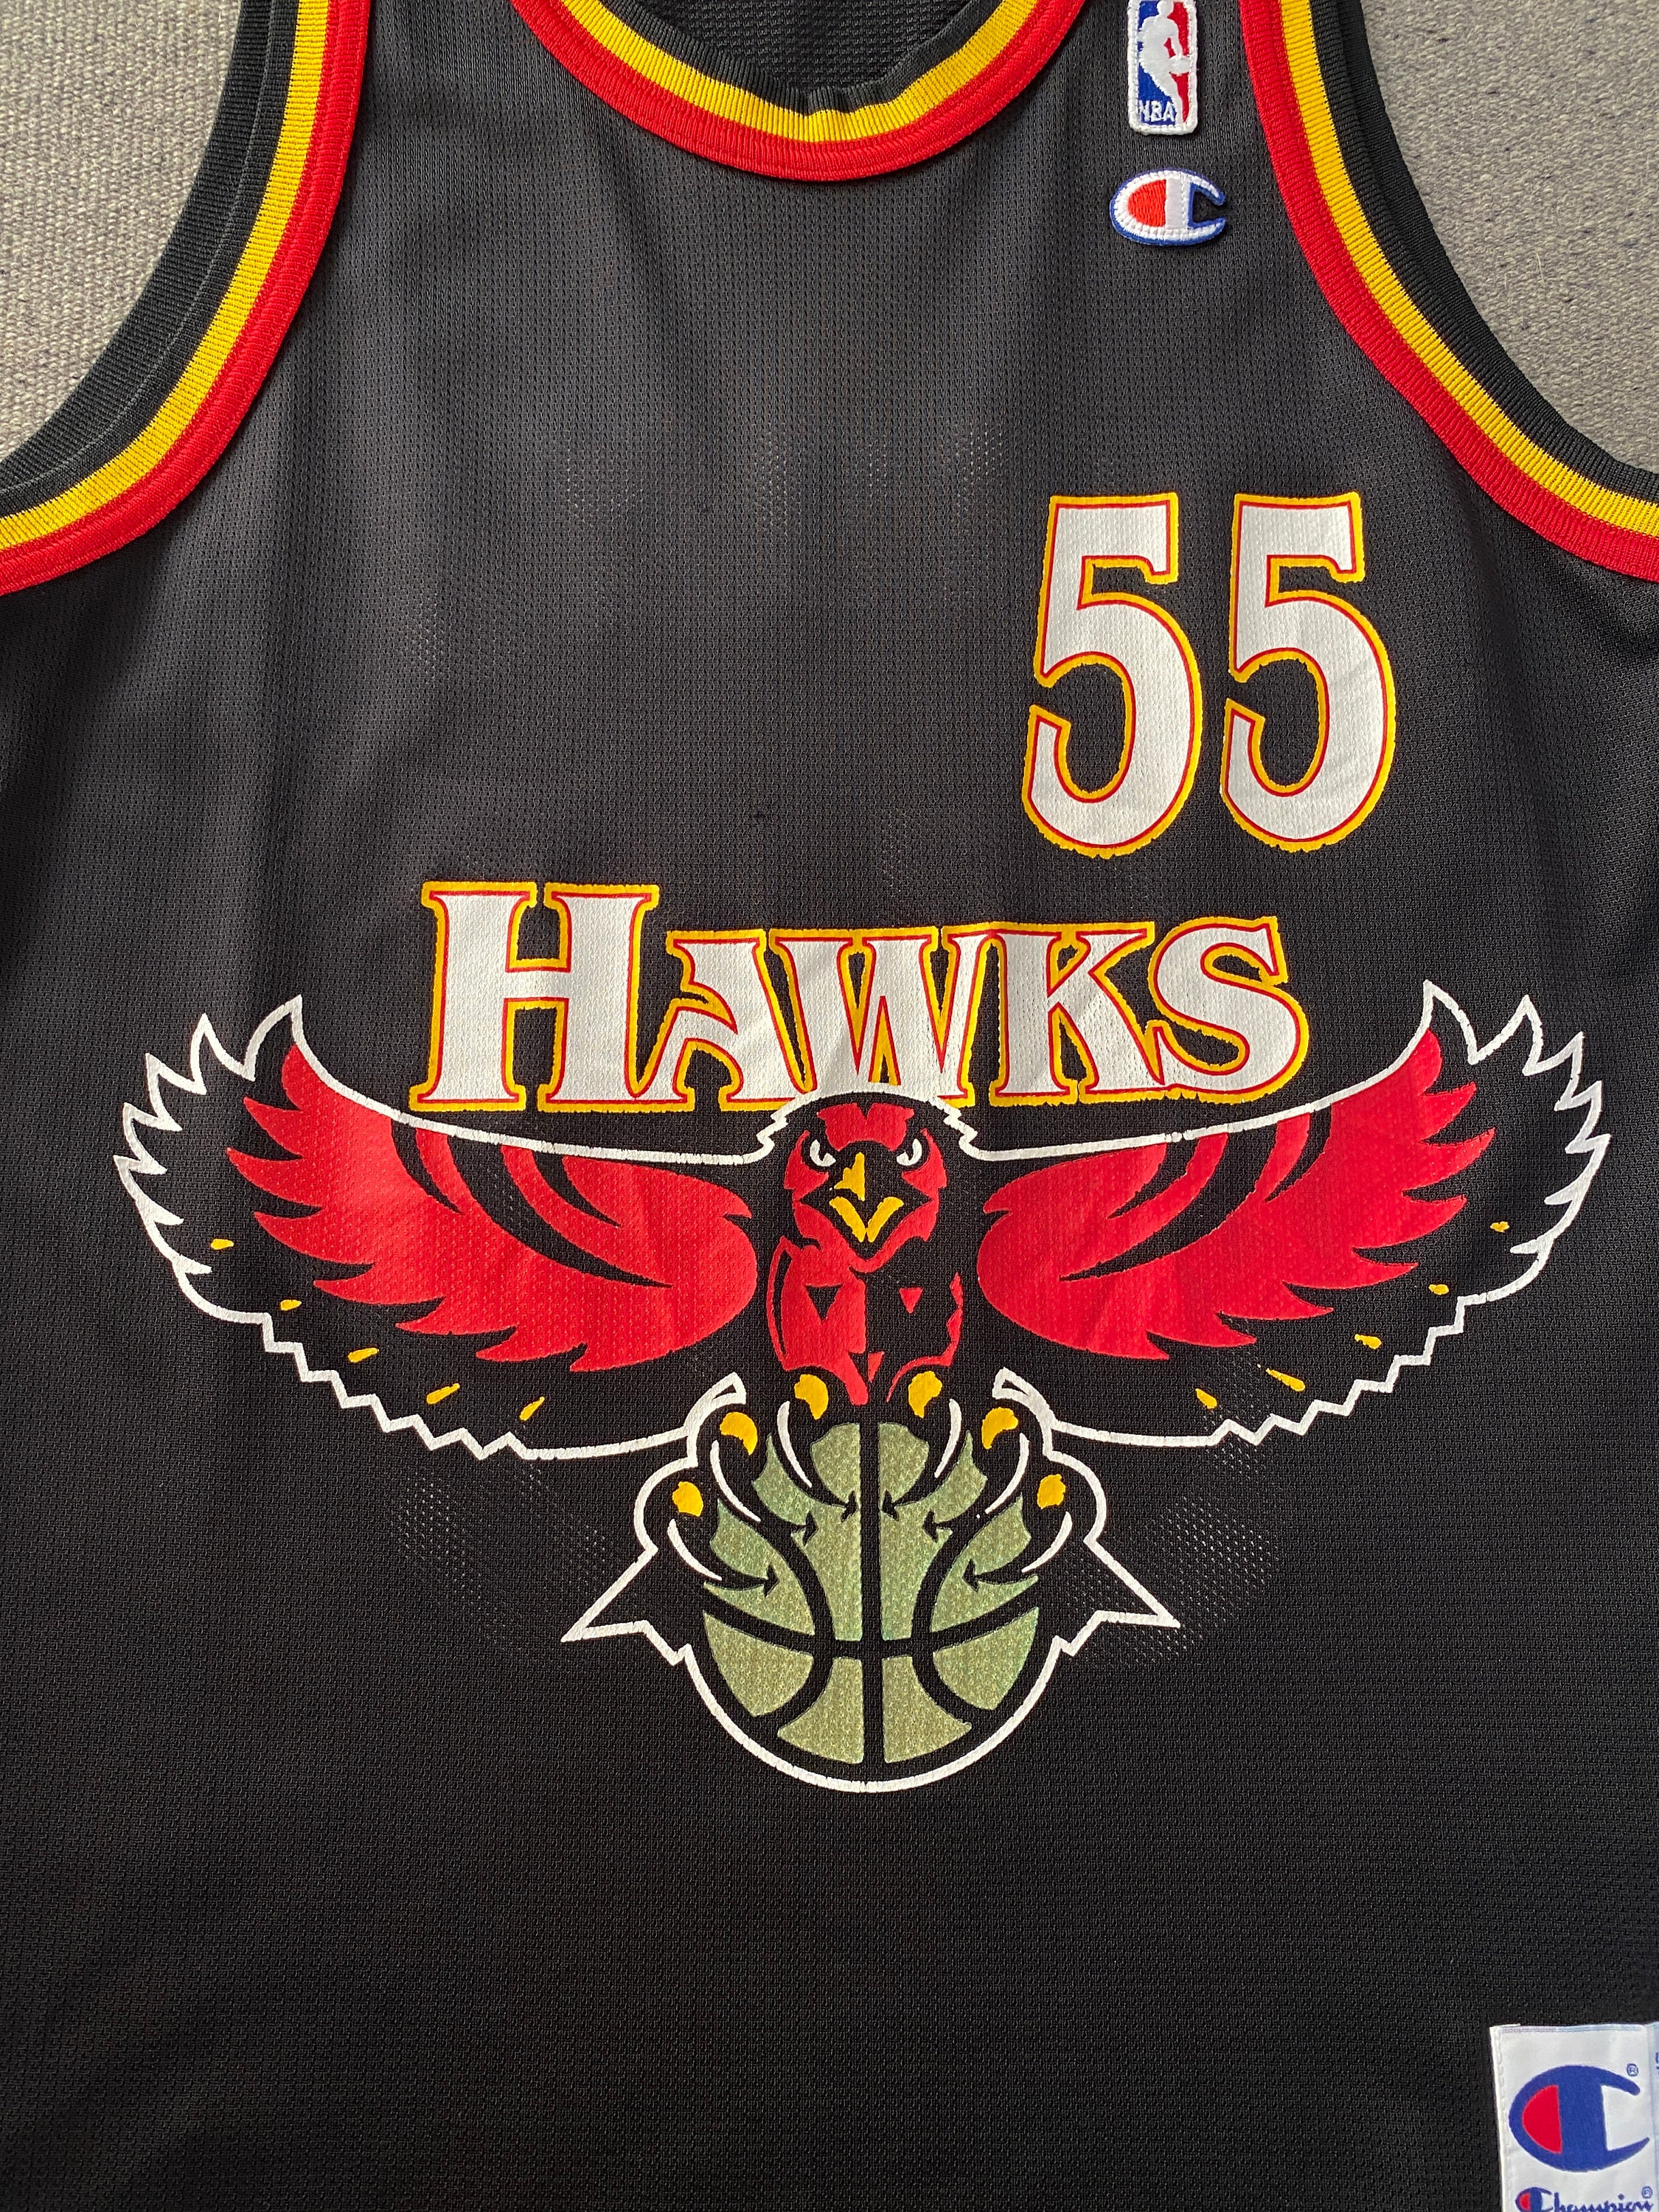 Size 40. 55 Dikembe Mutombo Hawks 90s Vintage NBA Jersey Made 